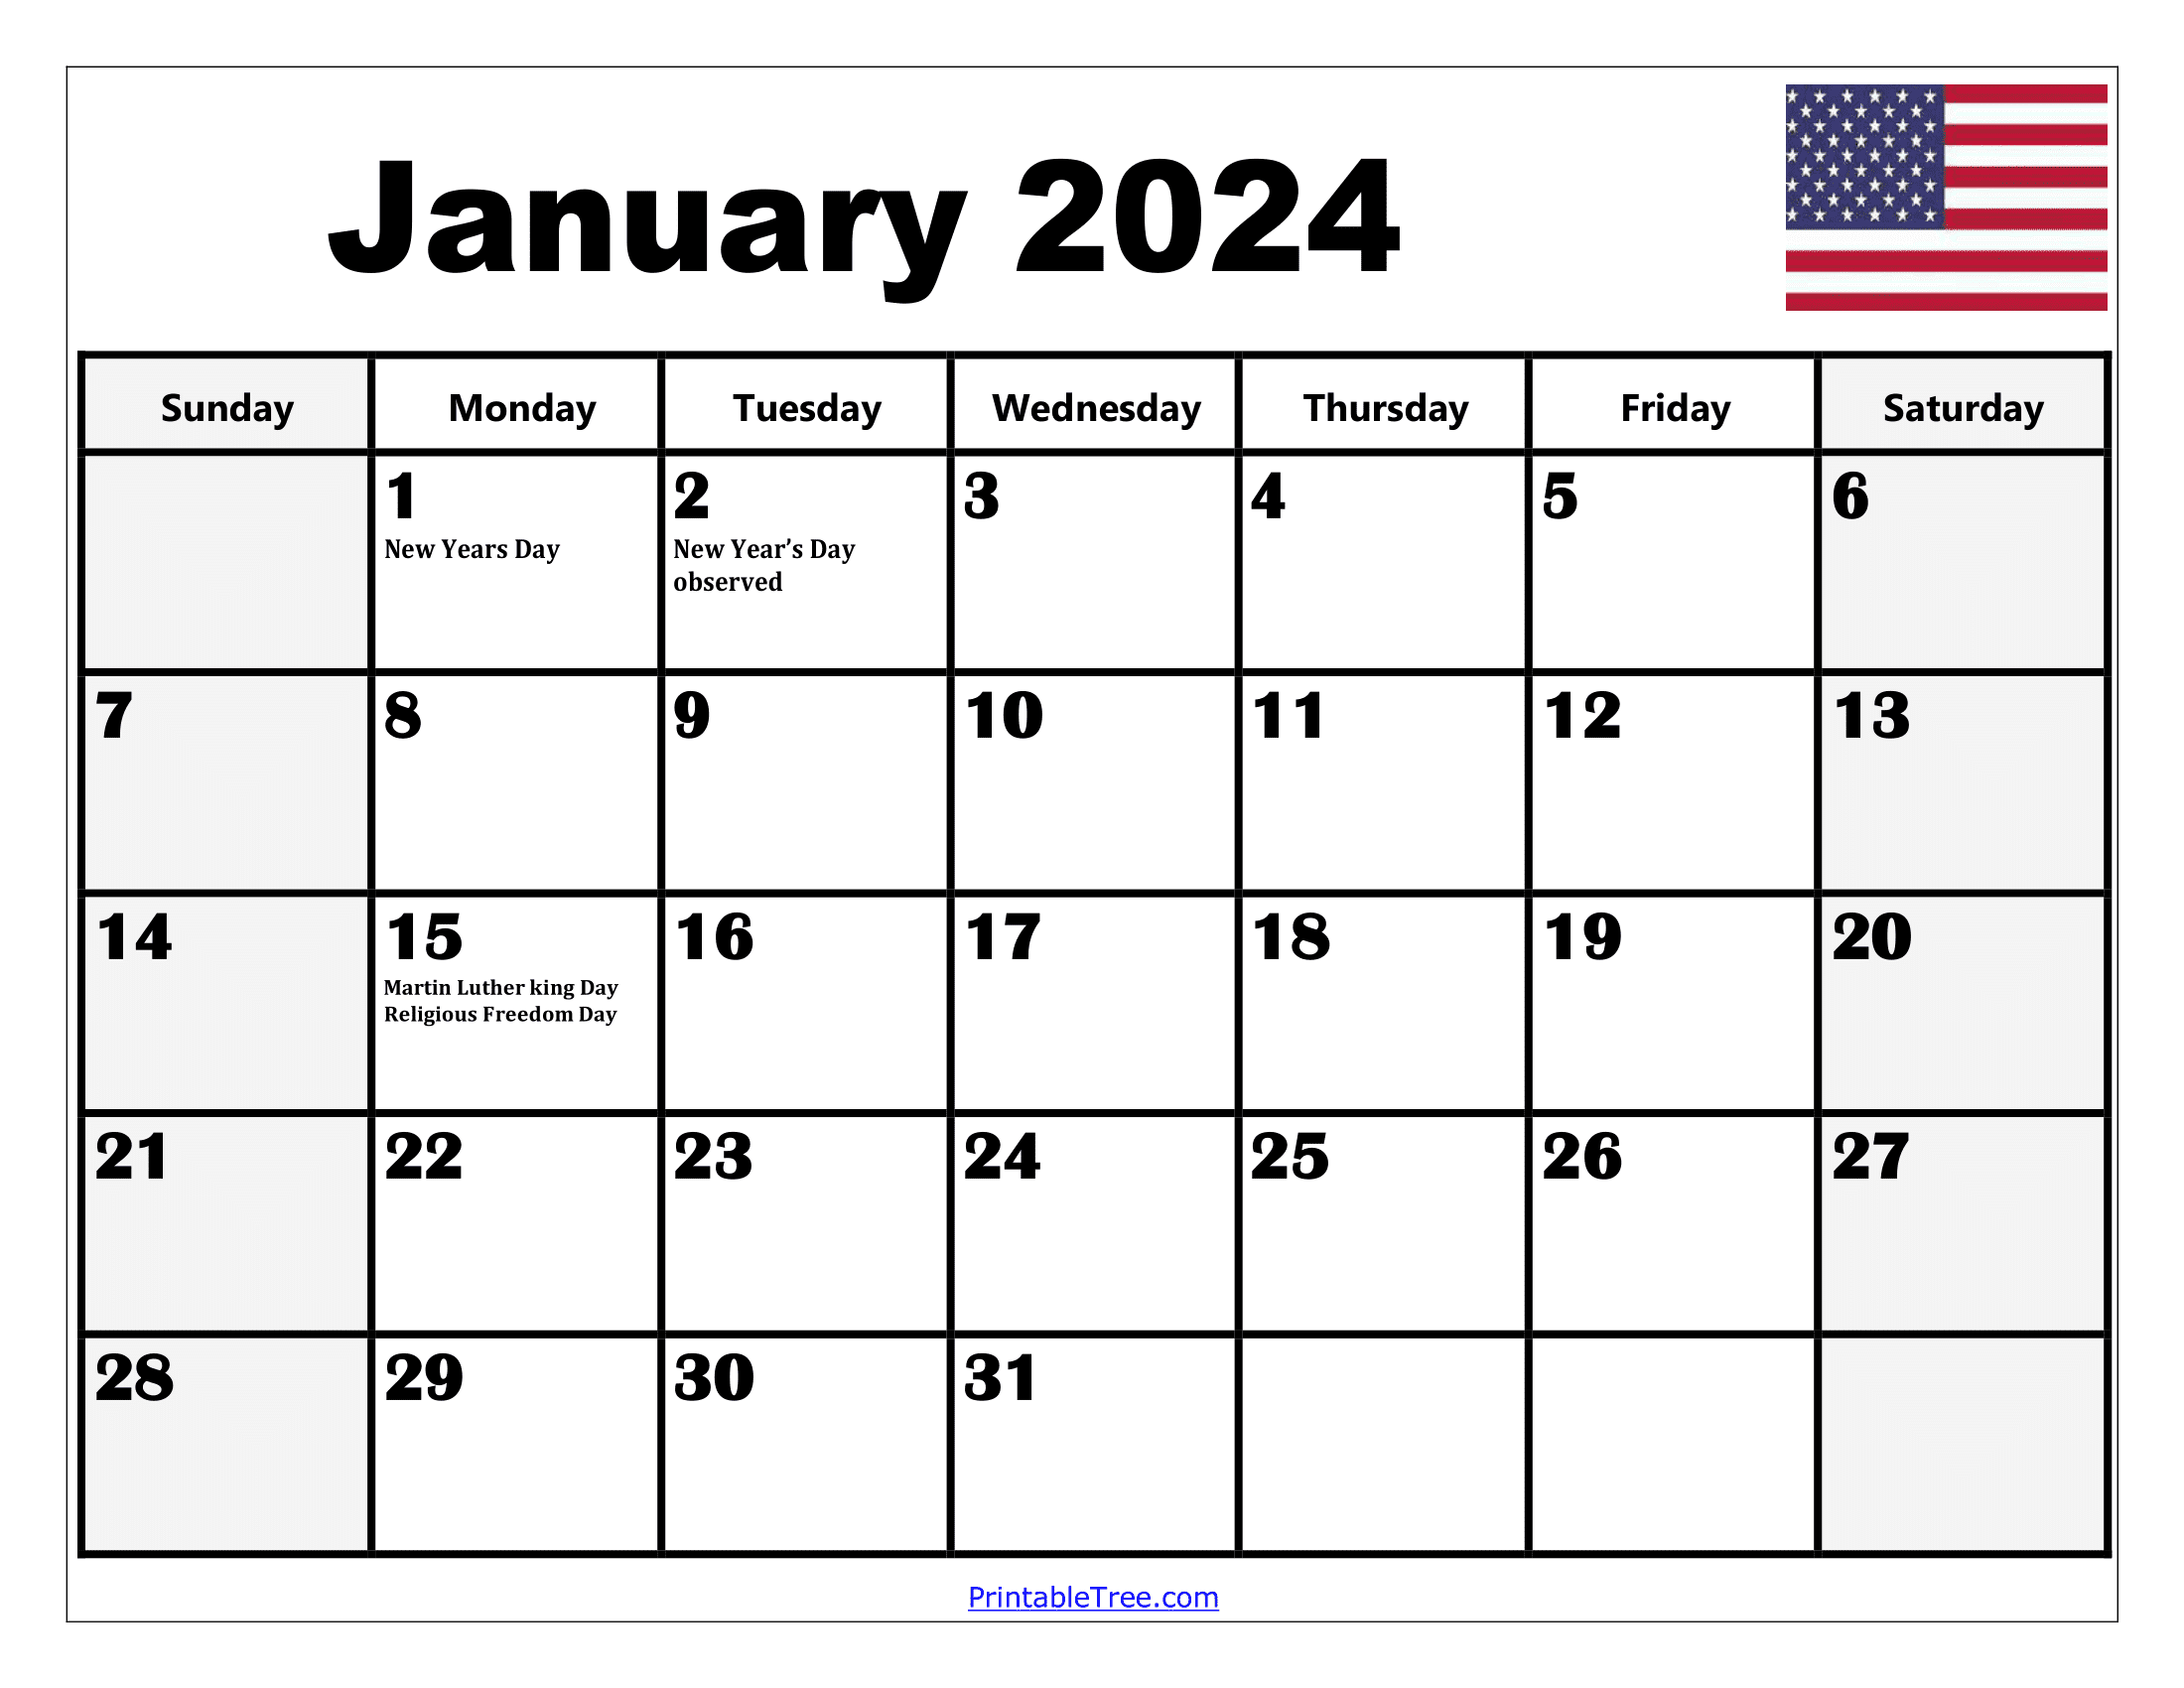 2024 Holiday Calendar Days Free Download Nov 2024 Calendar - Free Printable 2024 Calendar With Daily Holidays